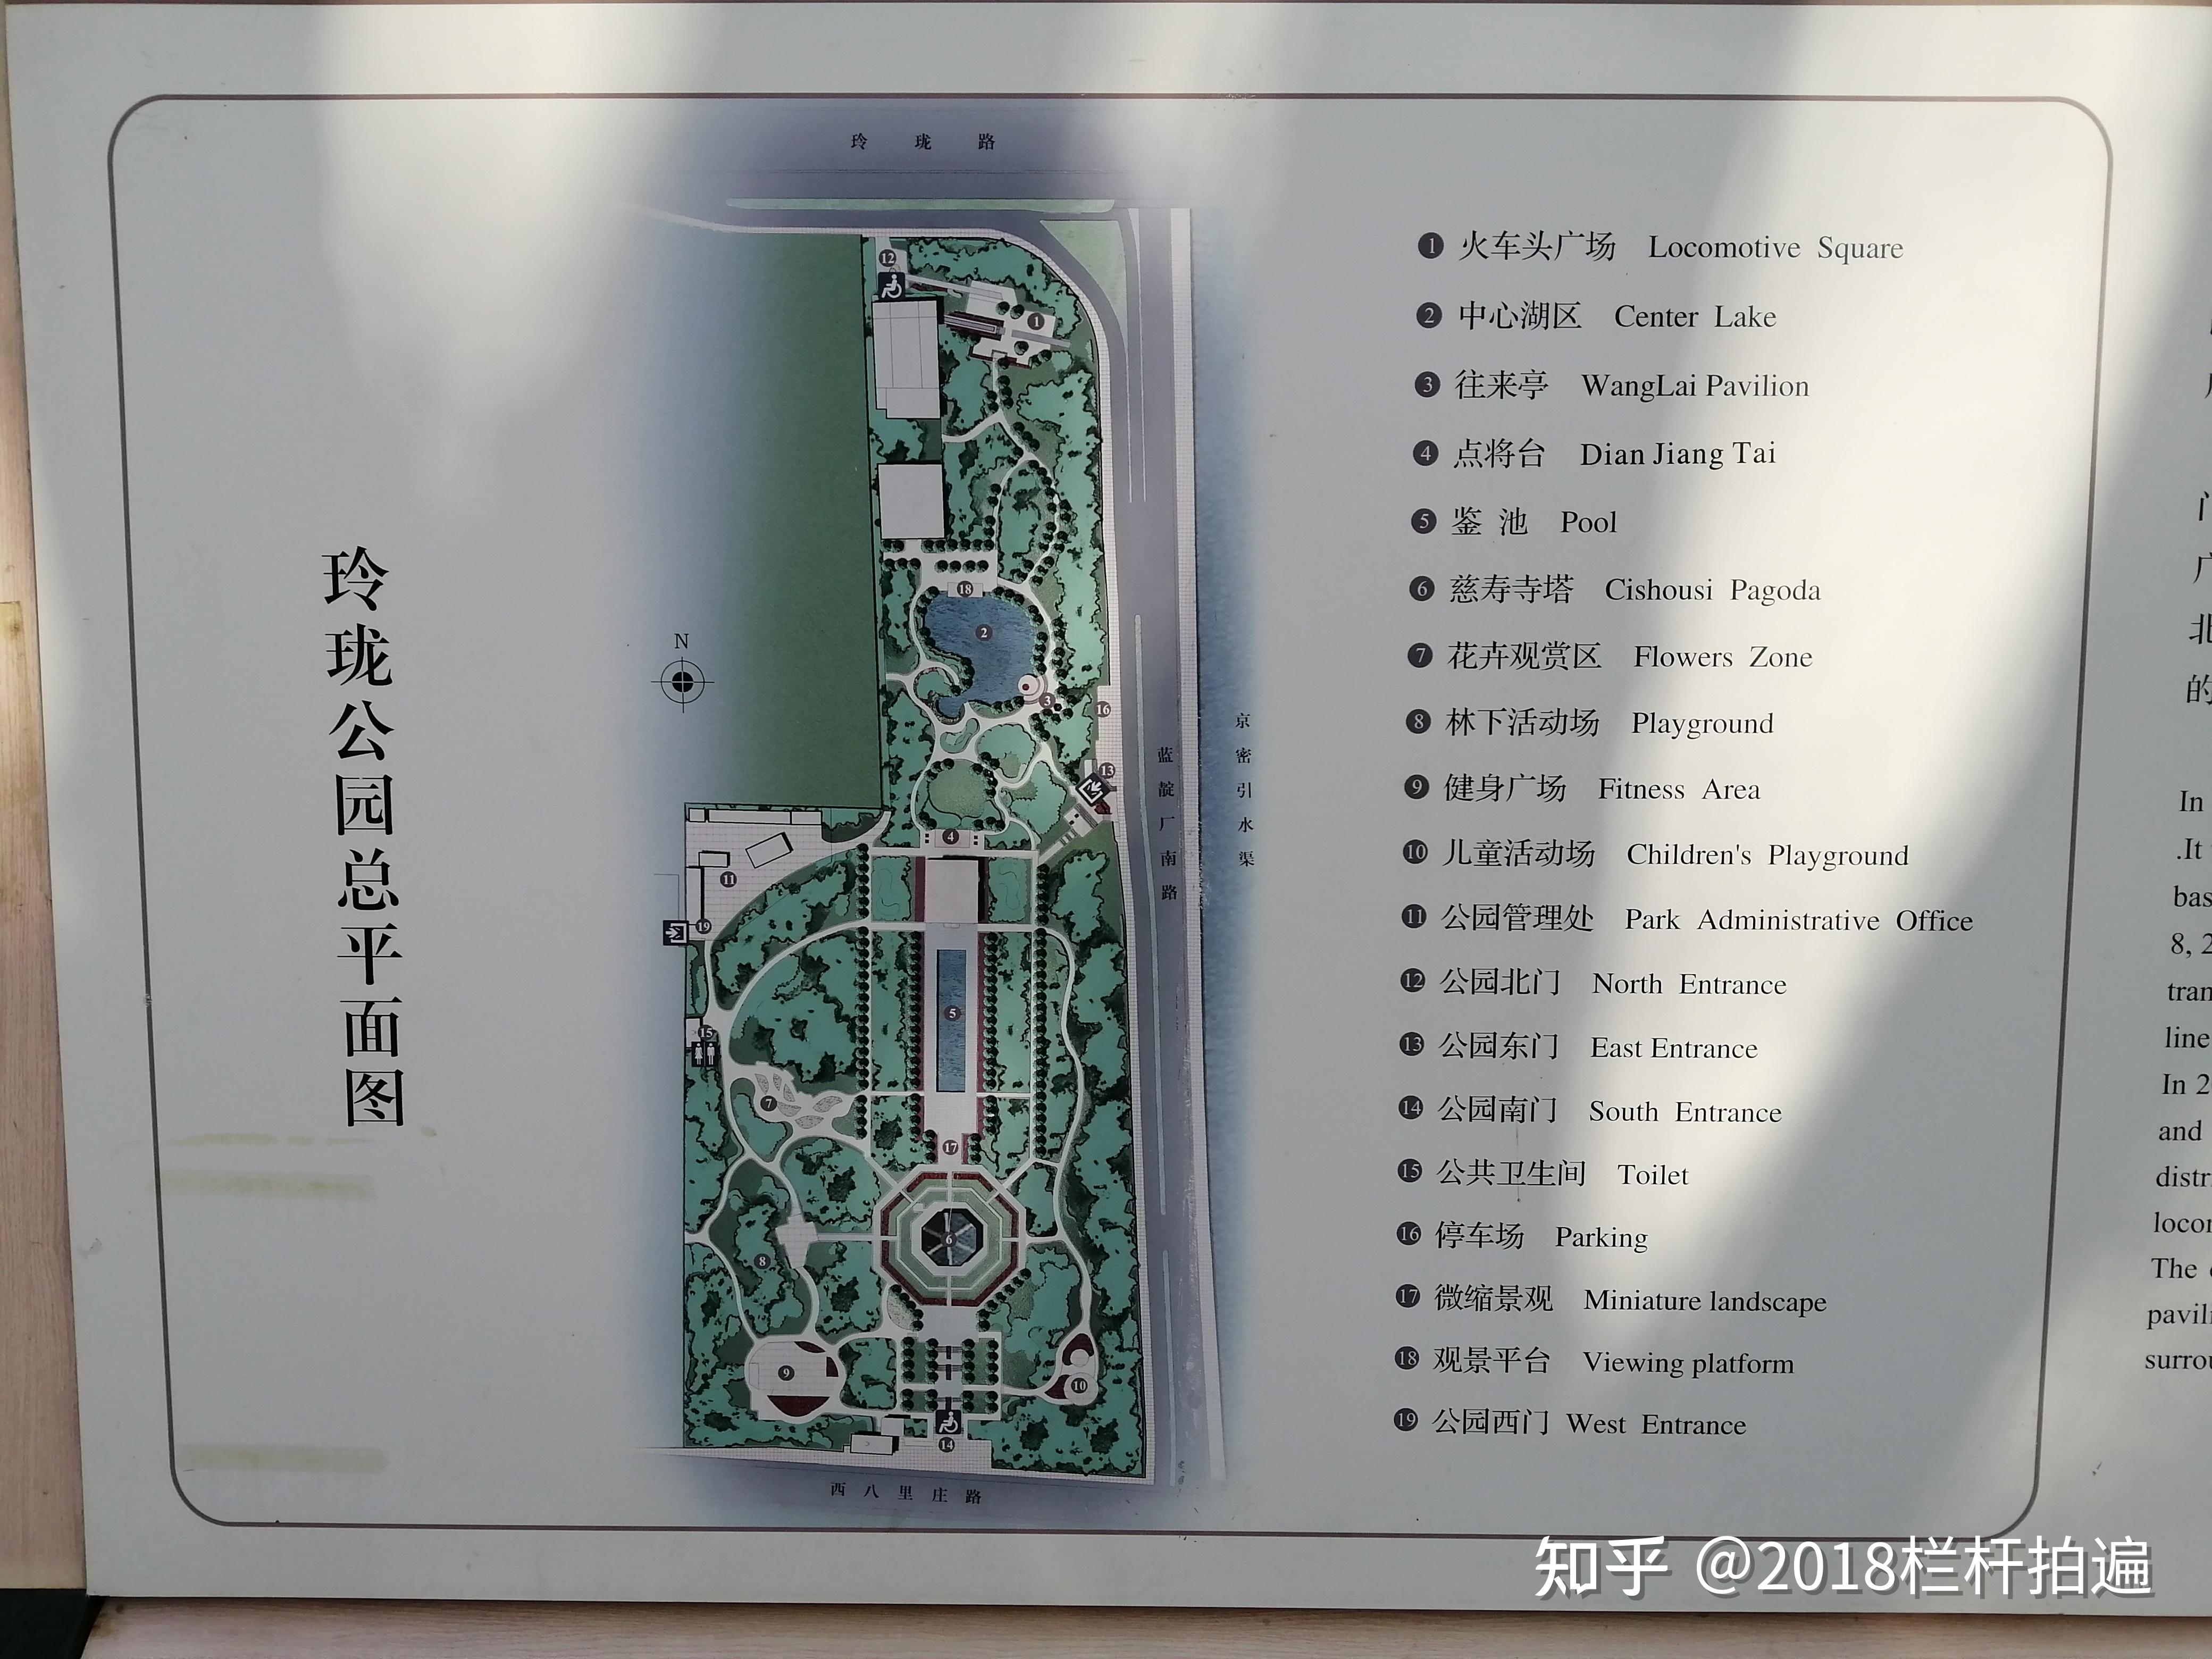 北京:玲珑公园/慈寿寺塔/摩诃庵